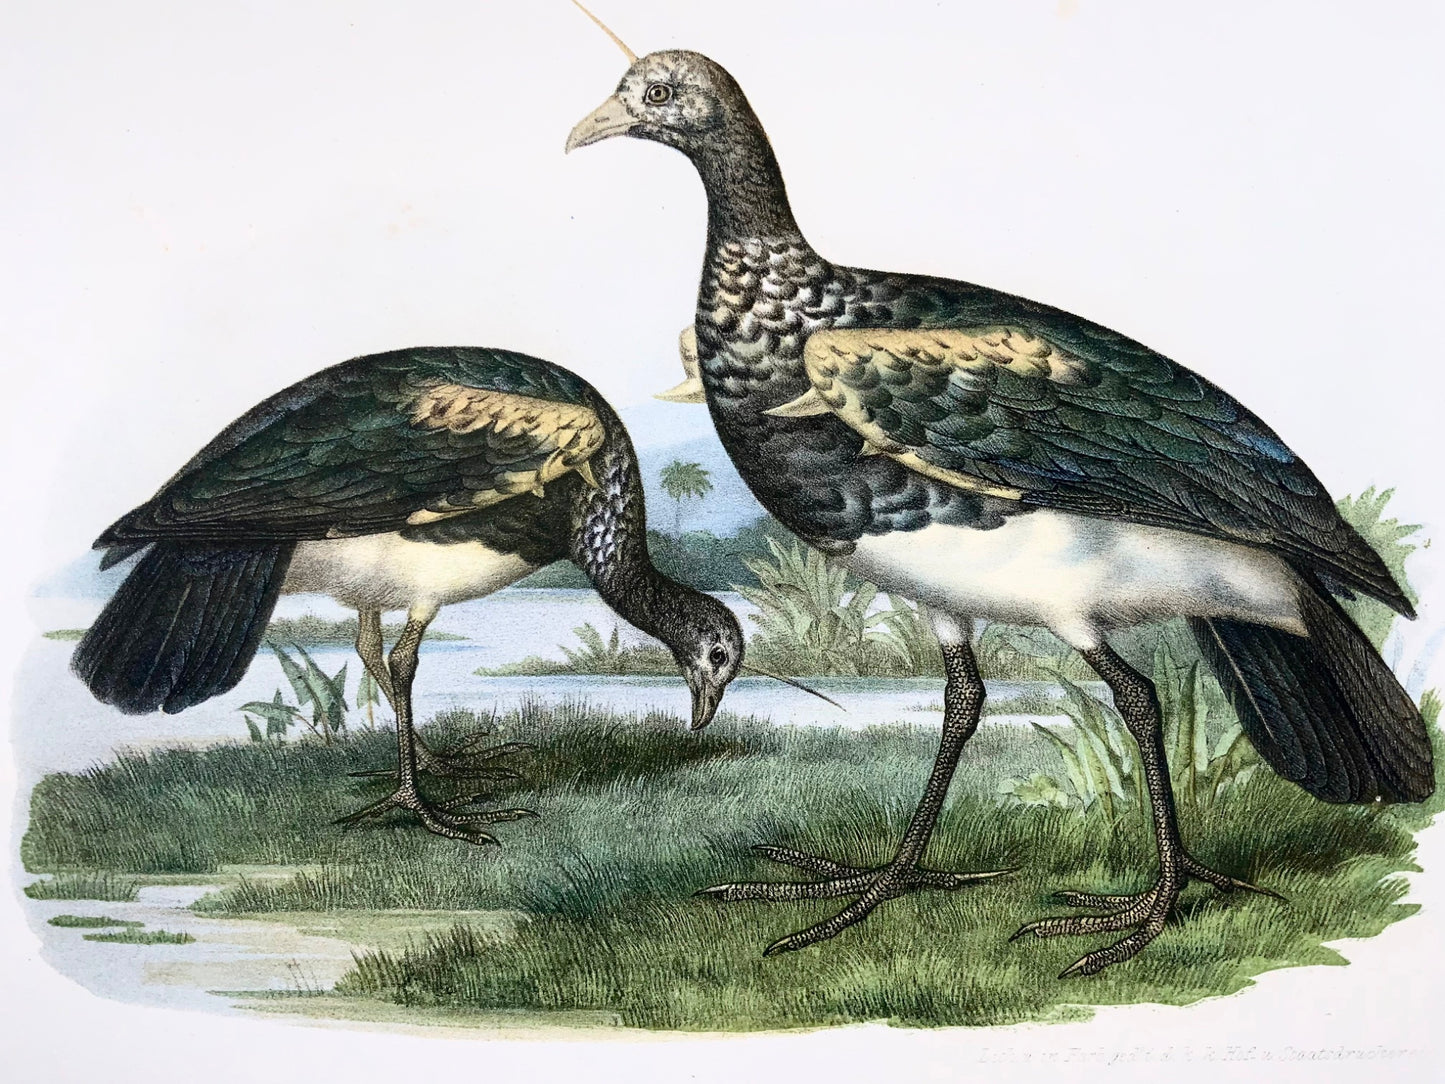 1860 Oiseaux hurleurs à cornes, Fitzinger, lithographie, finition main, ornithologie